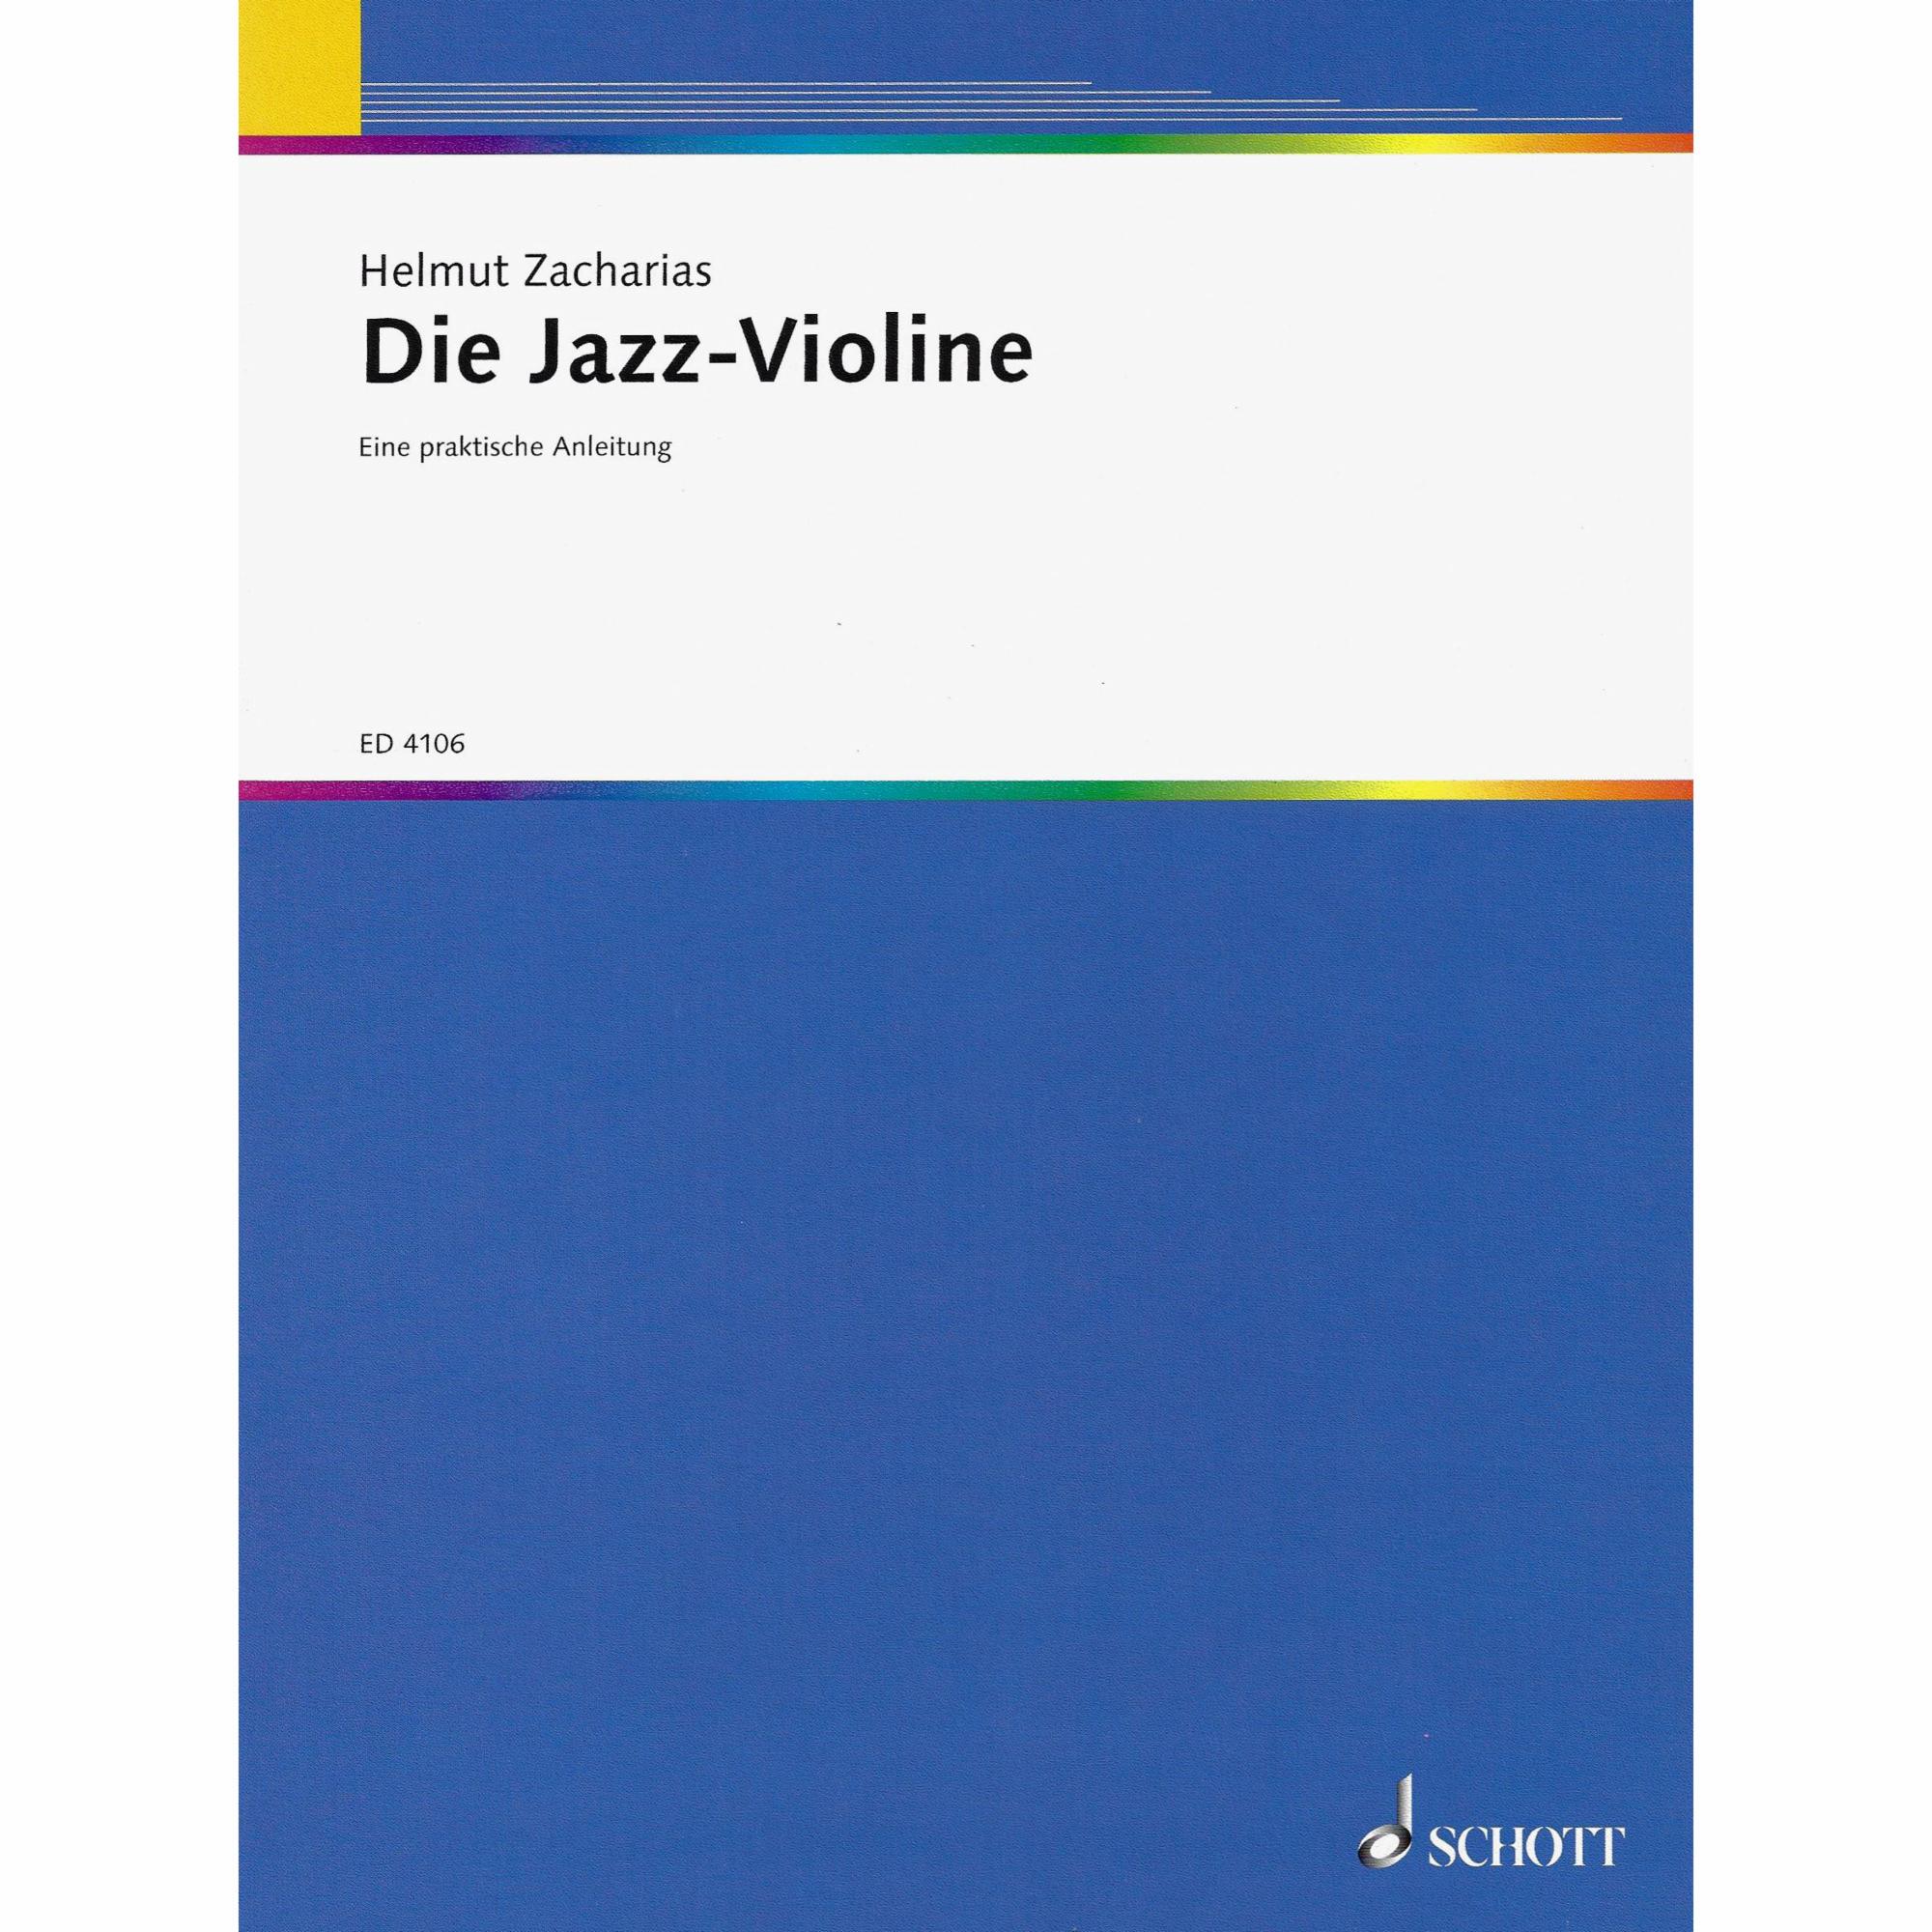 Die Jazz-Violine